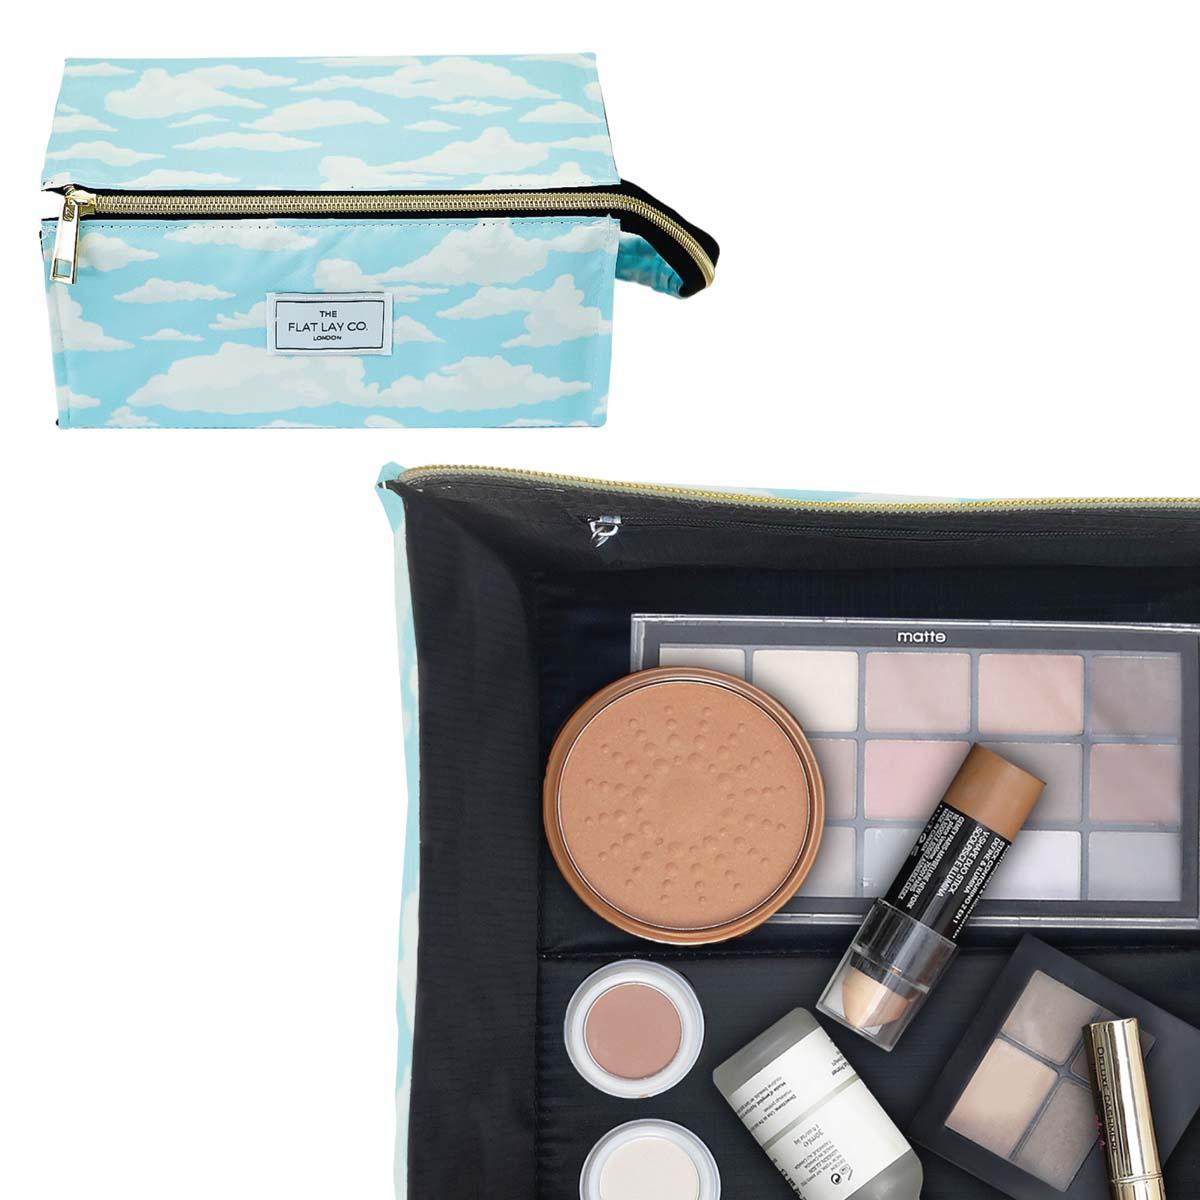 The Flat Lay Co. Open Flat Makeup Box Bag Cloudy | SEPHORA UK